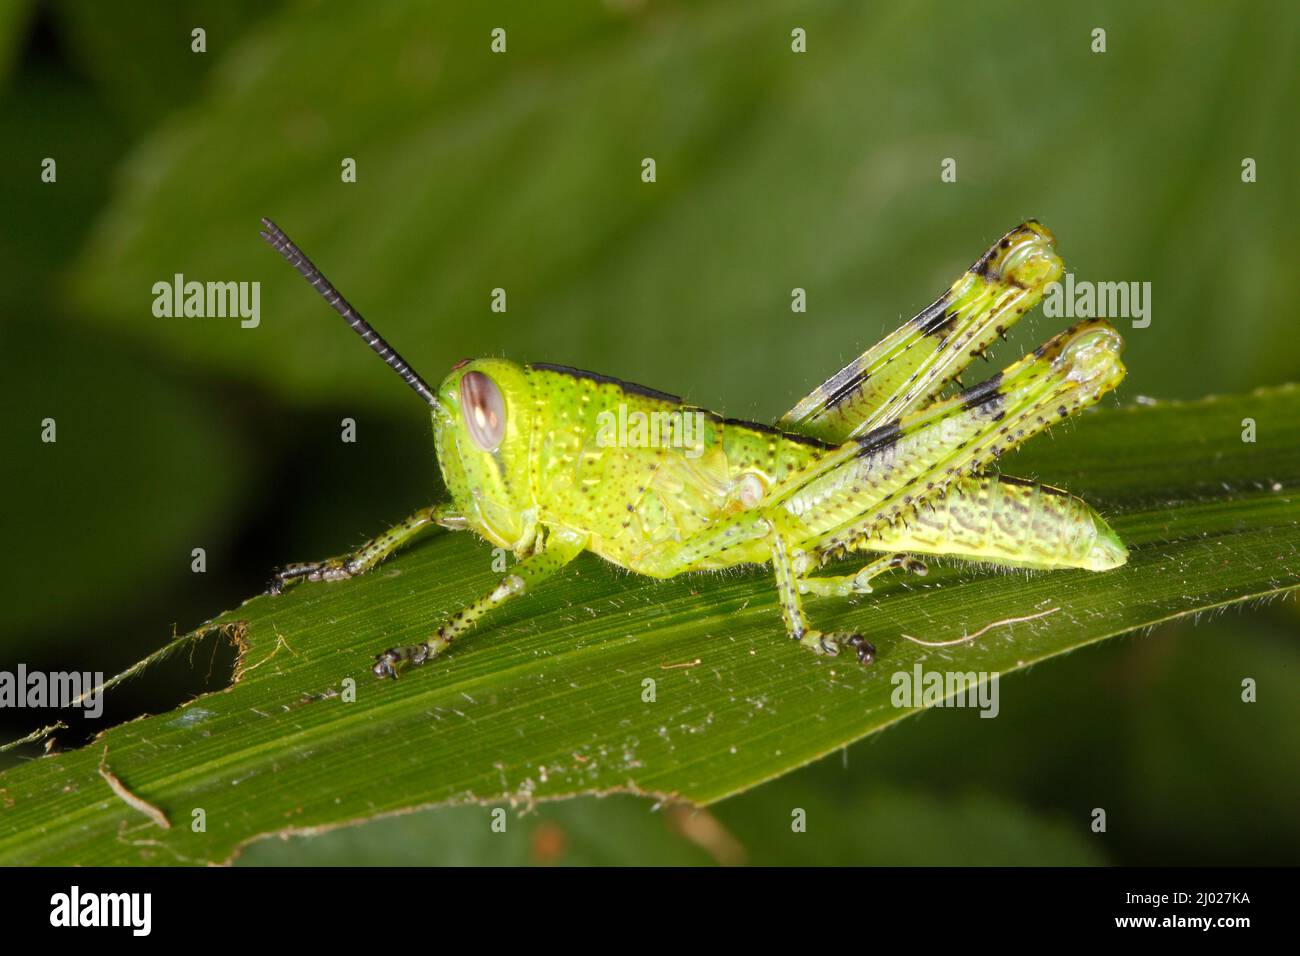 Riesige Grasshopper, Valanga irregularis. Auch bekannt als Giant Valanga oder Hedge Grasshopper. Leuchtend grüne Instarnymphe. Coffs Harbour, NSW, Australien Stockfoto